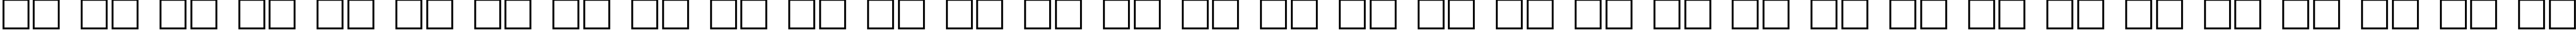 Пример написания русского алфавита шрифтом PlainScriptCTT